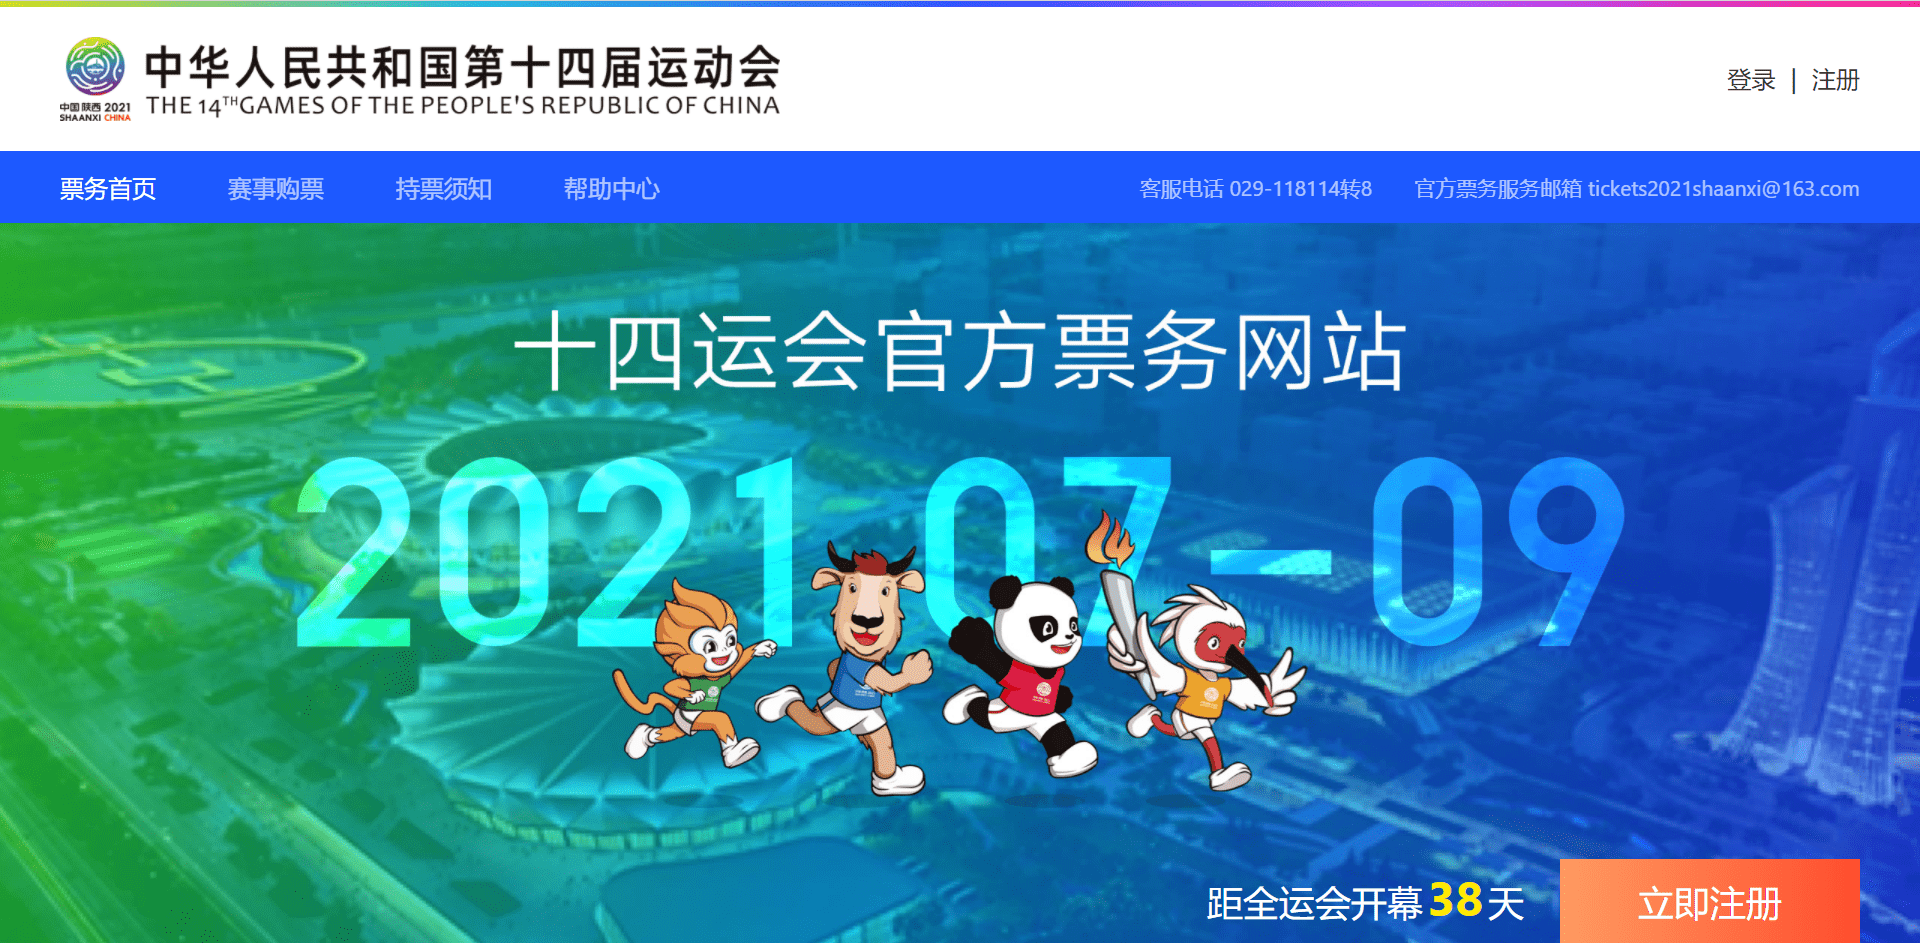 二维码注册登记！二十三残奥会官方售票网站及QQ小程序已上架球票8月下旬开卖插图